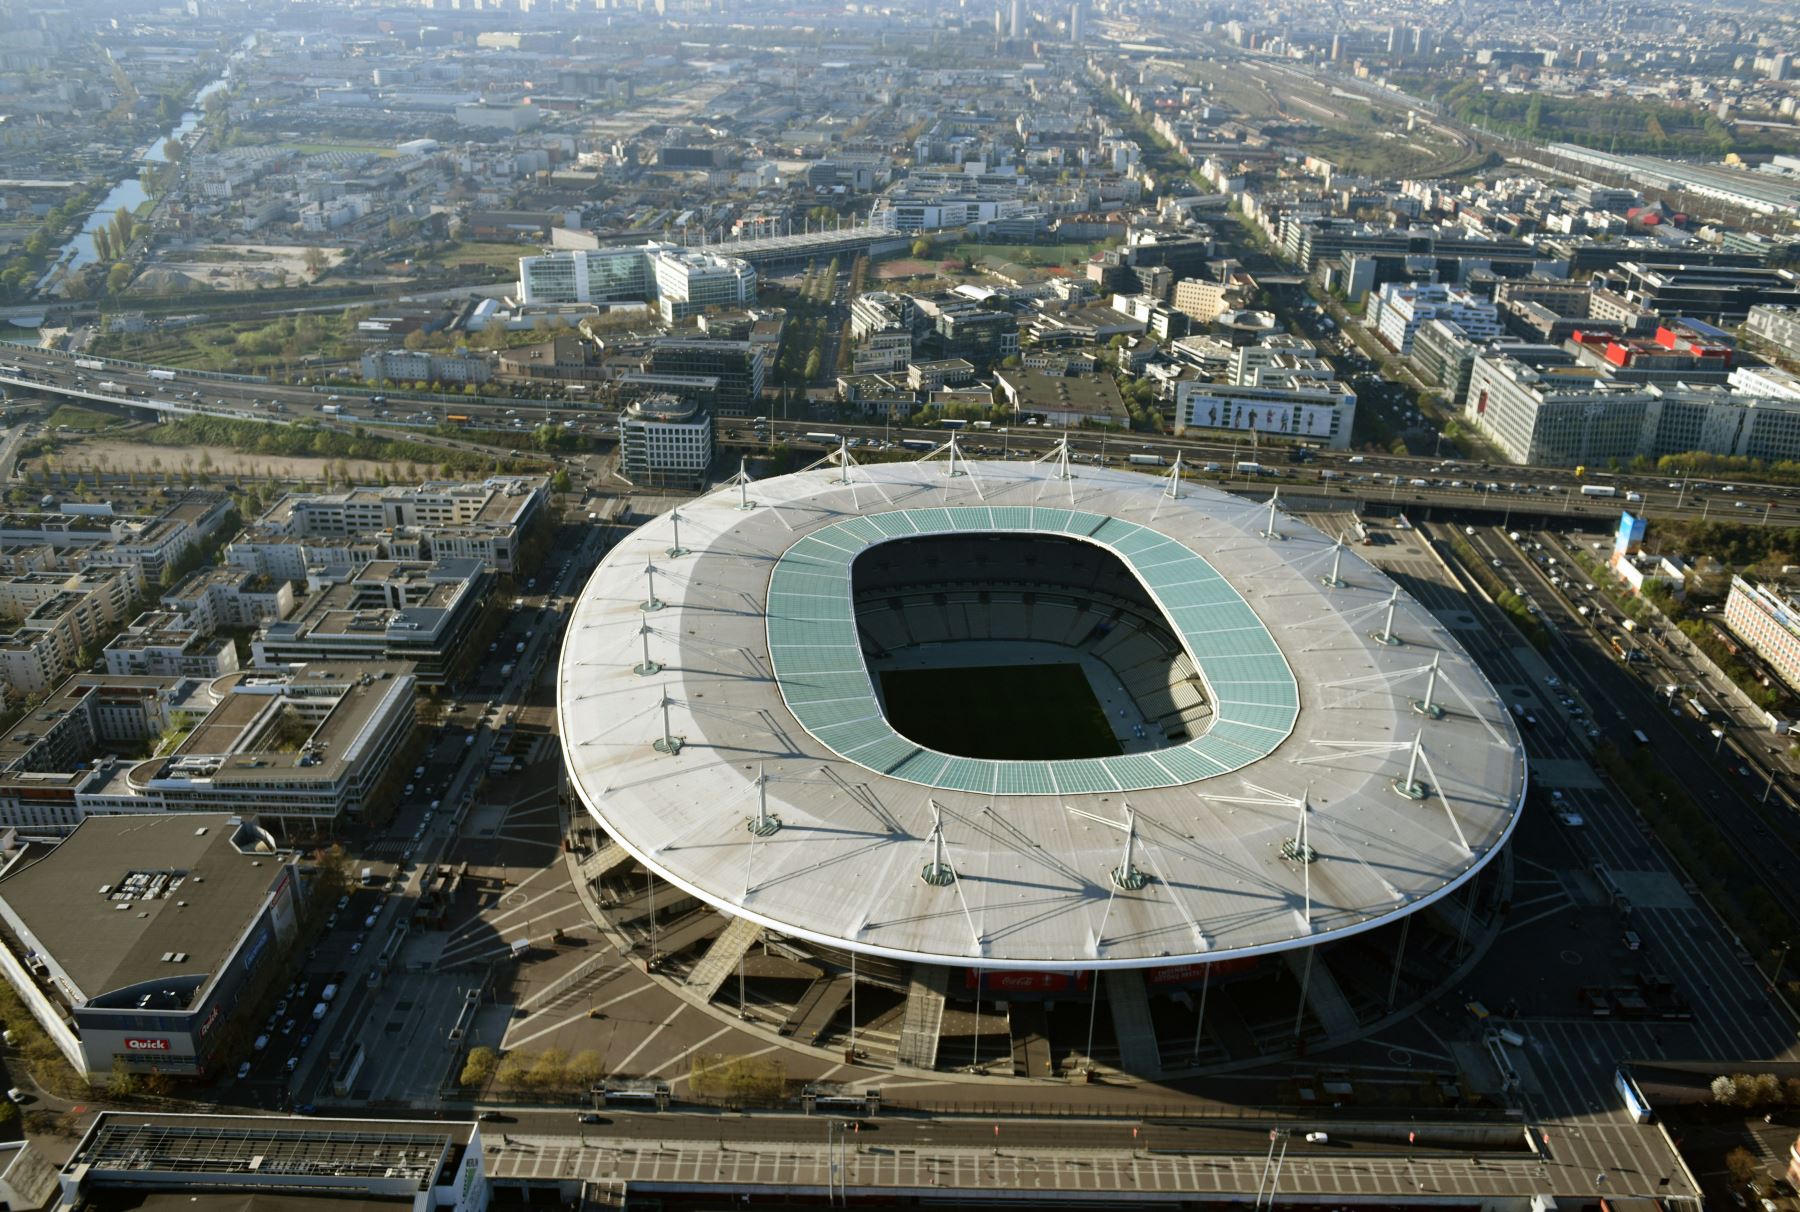 Ningún club tiene fijada su sede en este inmenso estadio situado en el municipio de Saint-Denis, al norte de la capital francesa, por lo que sus puertas se abren para grandes citas. Foto: AFP